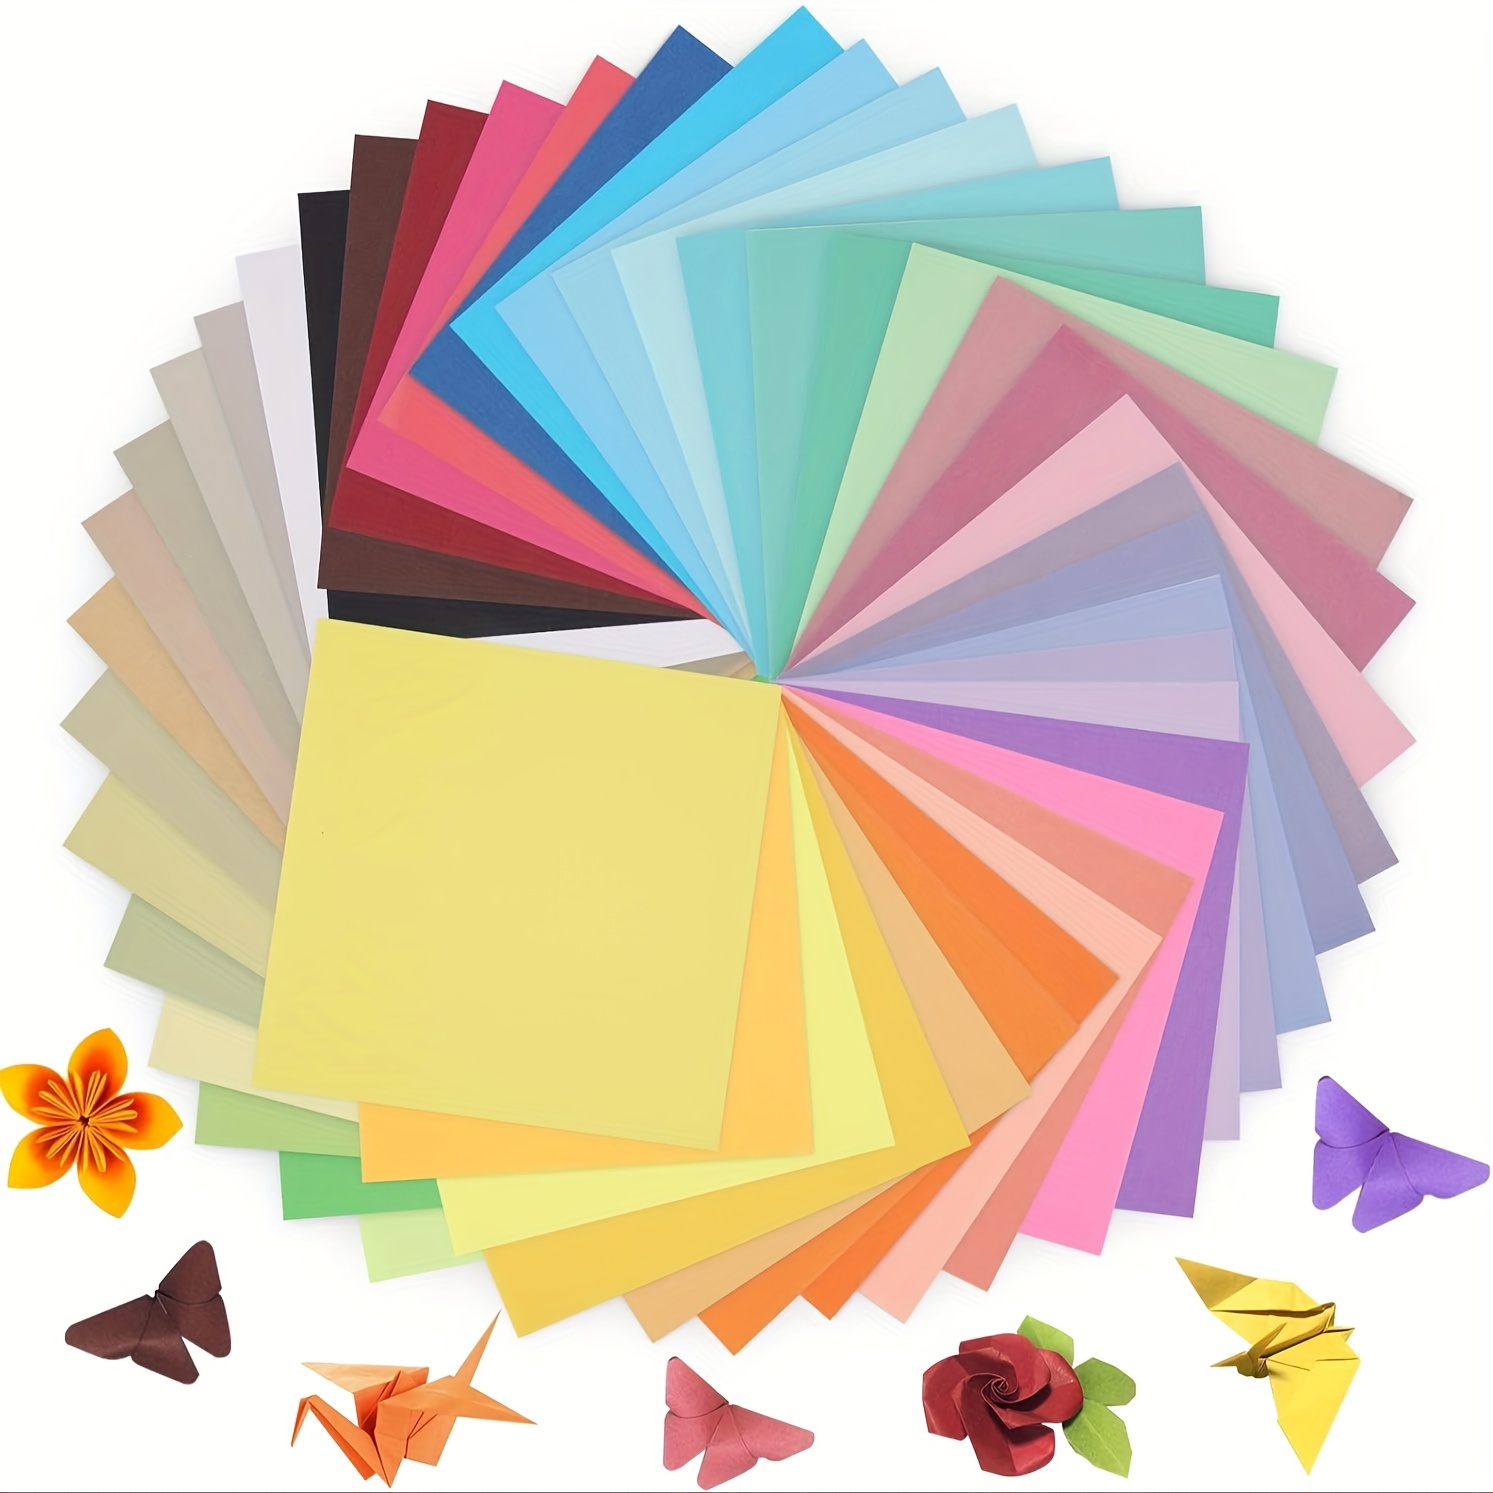 Paquete de 20 hojas de papel crepé A4 en 5 colores: azul, púrpura, rojo,  rosa oscuro y verde para proyectos de artesanía o arte Hojas más gruesas de